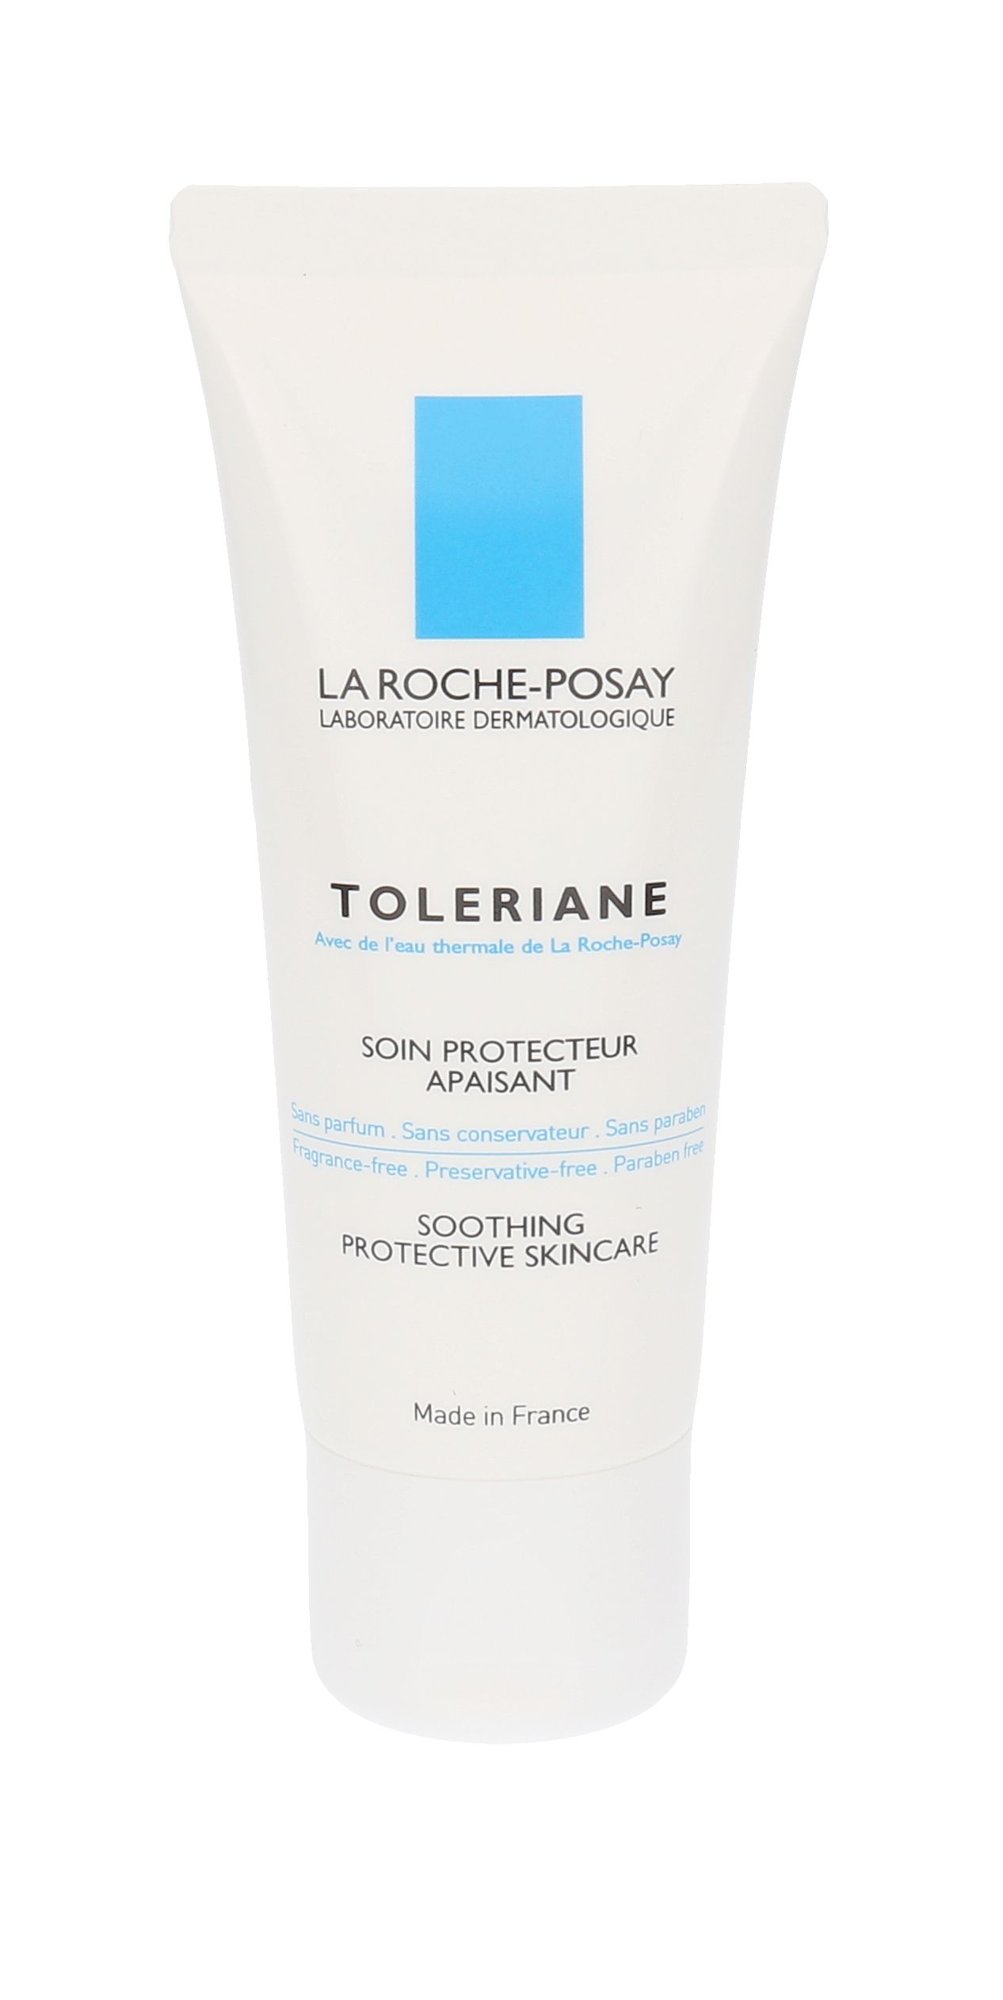 La Roche-Posay Toleriane Protective Skincare